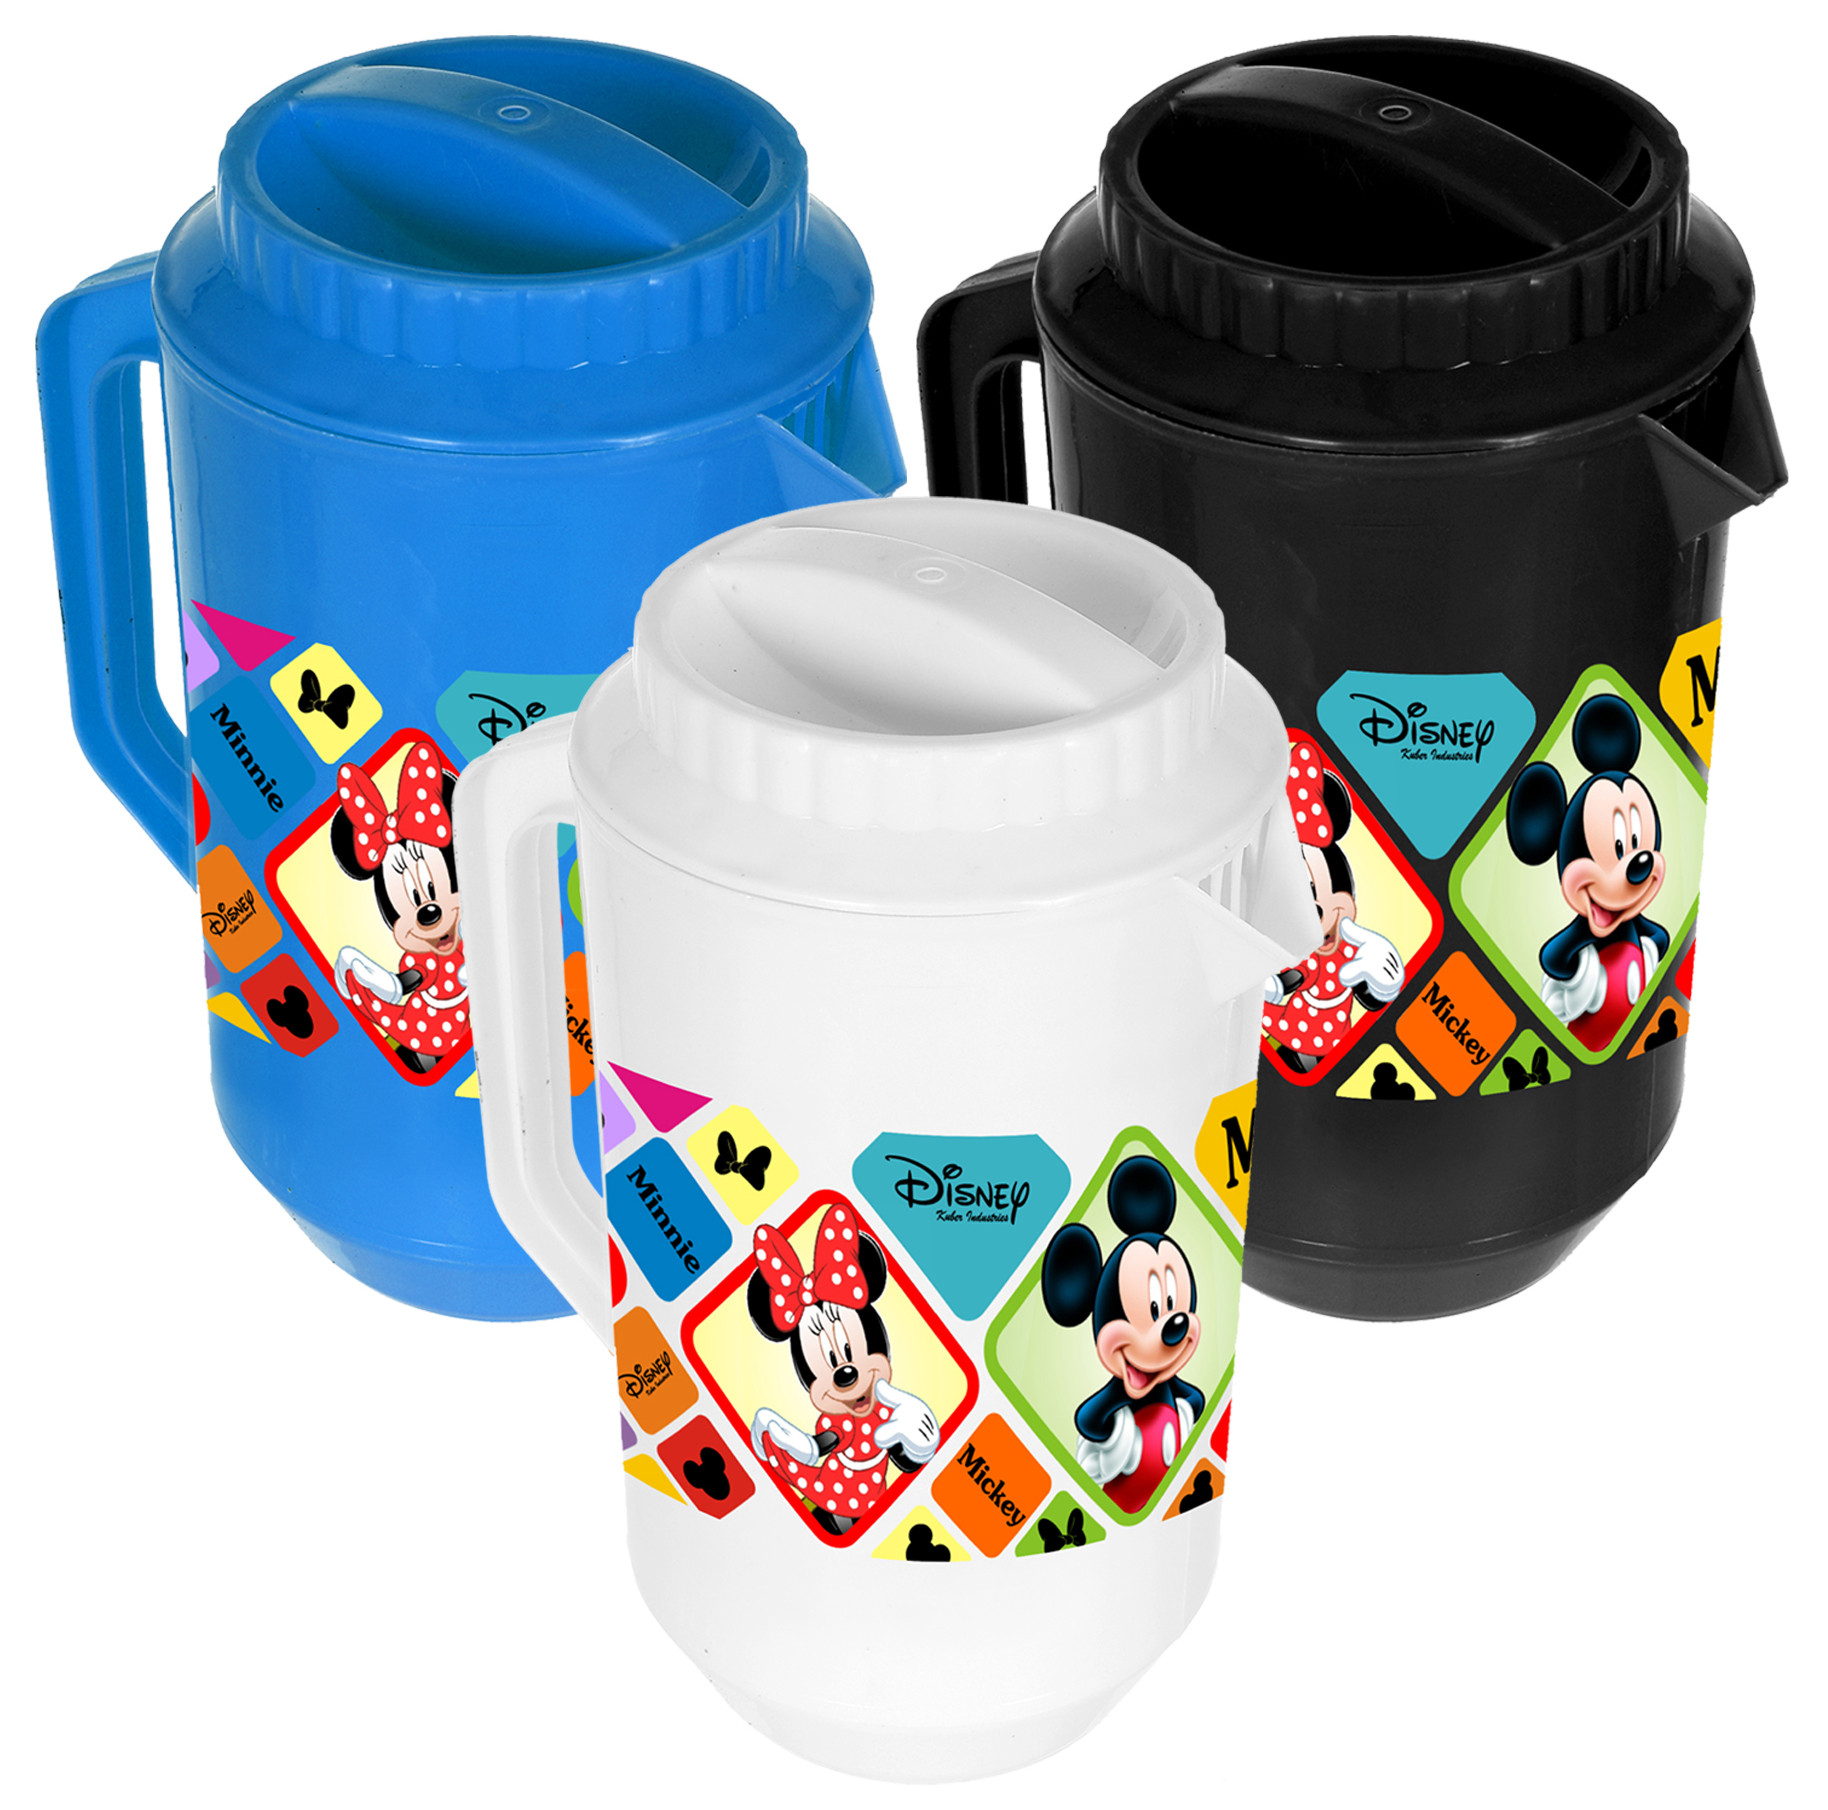 Kuber Industries Disney Mickey Minnie Print Unbreakable Multipurpose Plastic Water & Juice Jug With Lid,2 Ltr (Set of 3,Blue & Black & White)